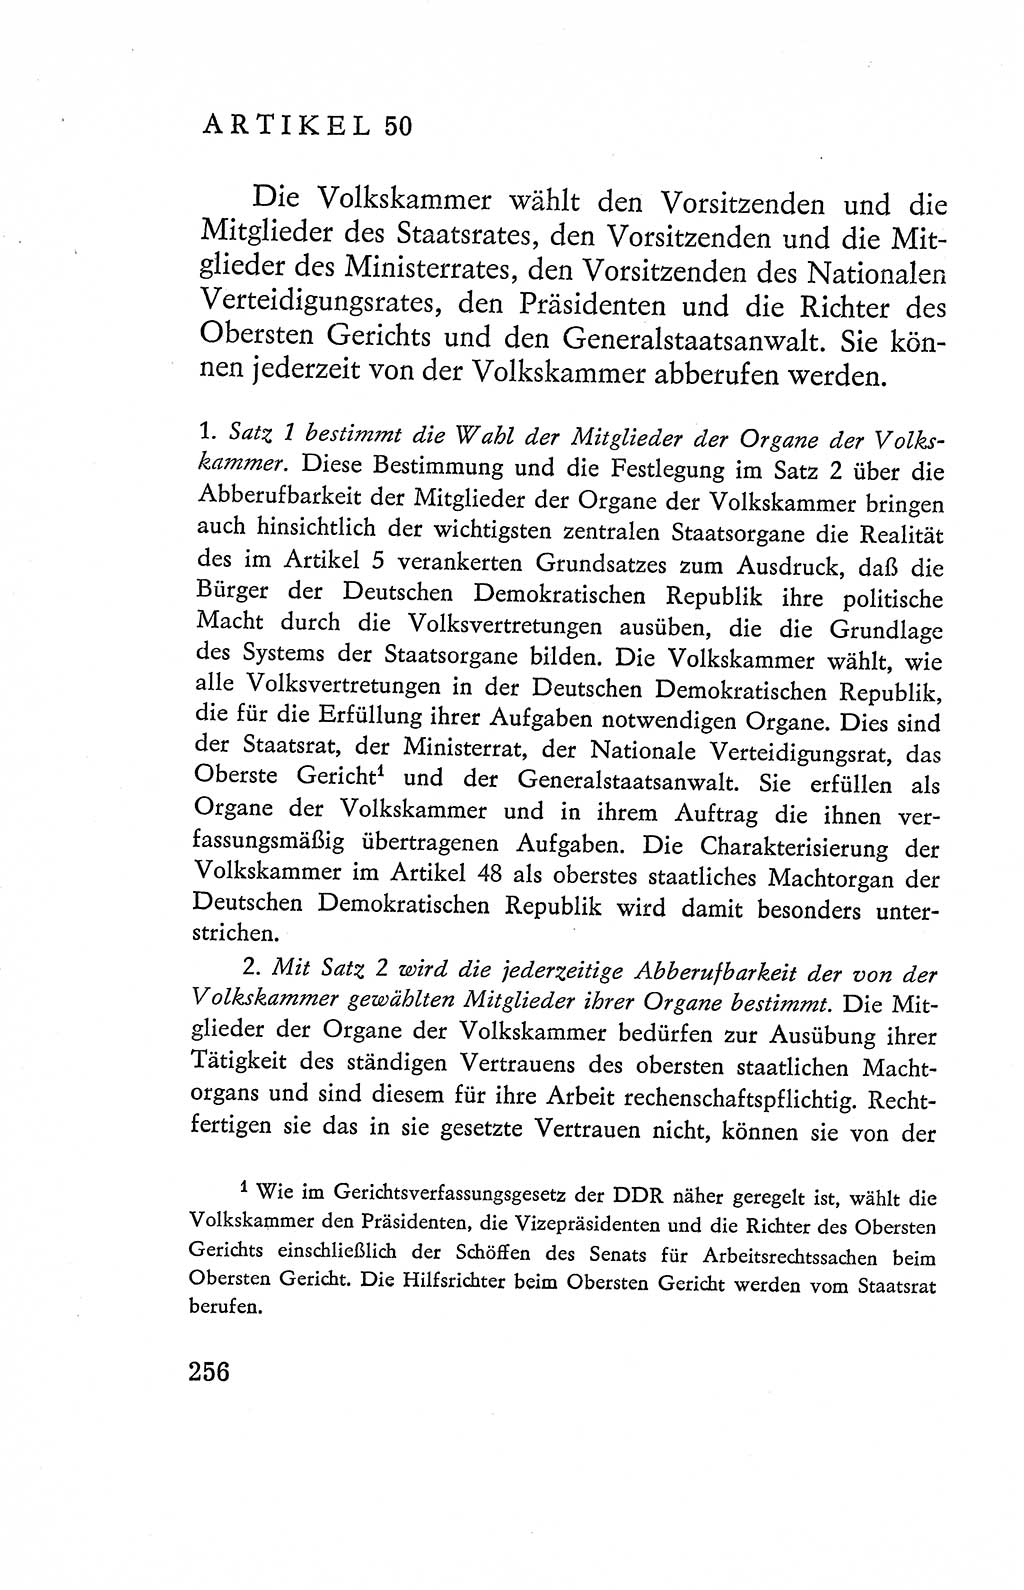 Verfassung der Deutschen Demokratischen Republik (DDR), Dokumente, Kommentar 1969, Band 2, Seite 256 (Verf. DDR Dok. Komm. 1969, Bd. 2, S. 256)